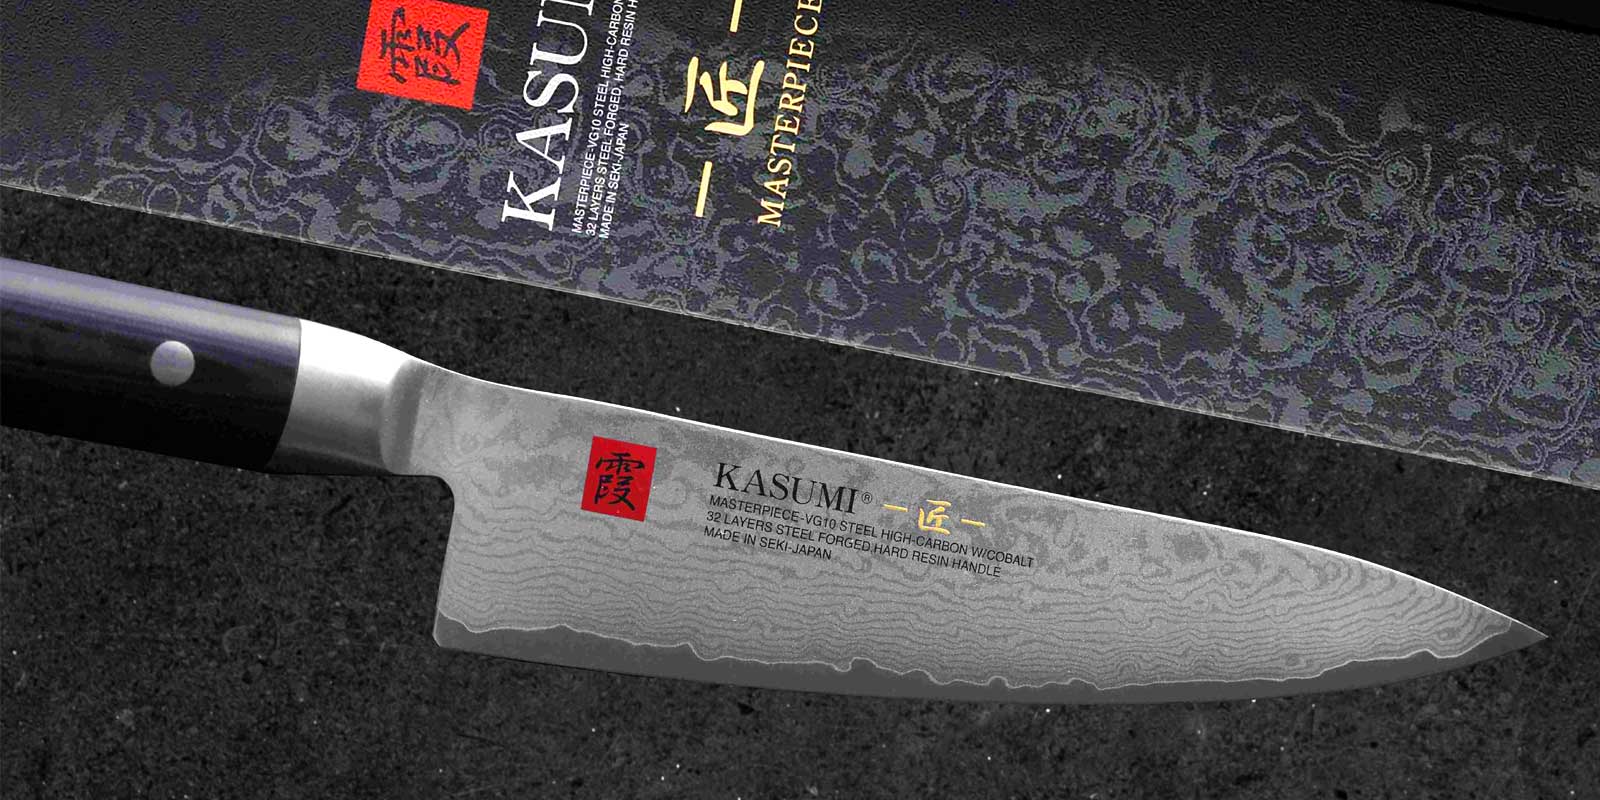 Ganivet Kasumi La capa mitjana de les fulles KASUMI MP esta fabricada amb el millor acer japones VG10, amb cobalt i un contingut de carboni mes elevat, que es va desenvolupar exclusivament per a la produccio de ganivets de cuina d`alta qualitat. Despres de la forja, les fulles es tornen a escalfar a uns 800 °C, despres es refreden rapidament de nou i, per tant, Rockwell s`endureix a uns 59-60 °C. La duresa de 59-60 HRC no nomes es considera la duresa optima per als ganivets de cuina al Japo. Amb una molt bona nitidesa, permet que el tall tingui una vida util molt llarga (retencio de talls - no s`avorreix tan rapidament), pero tambe permet tornar a esmolar facilment amb les pedres de esmolar SUMIKAMA.